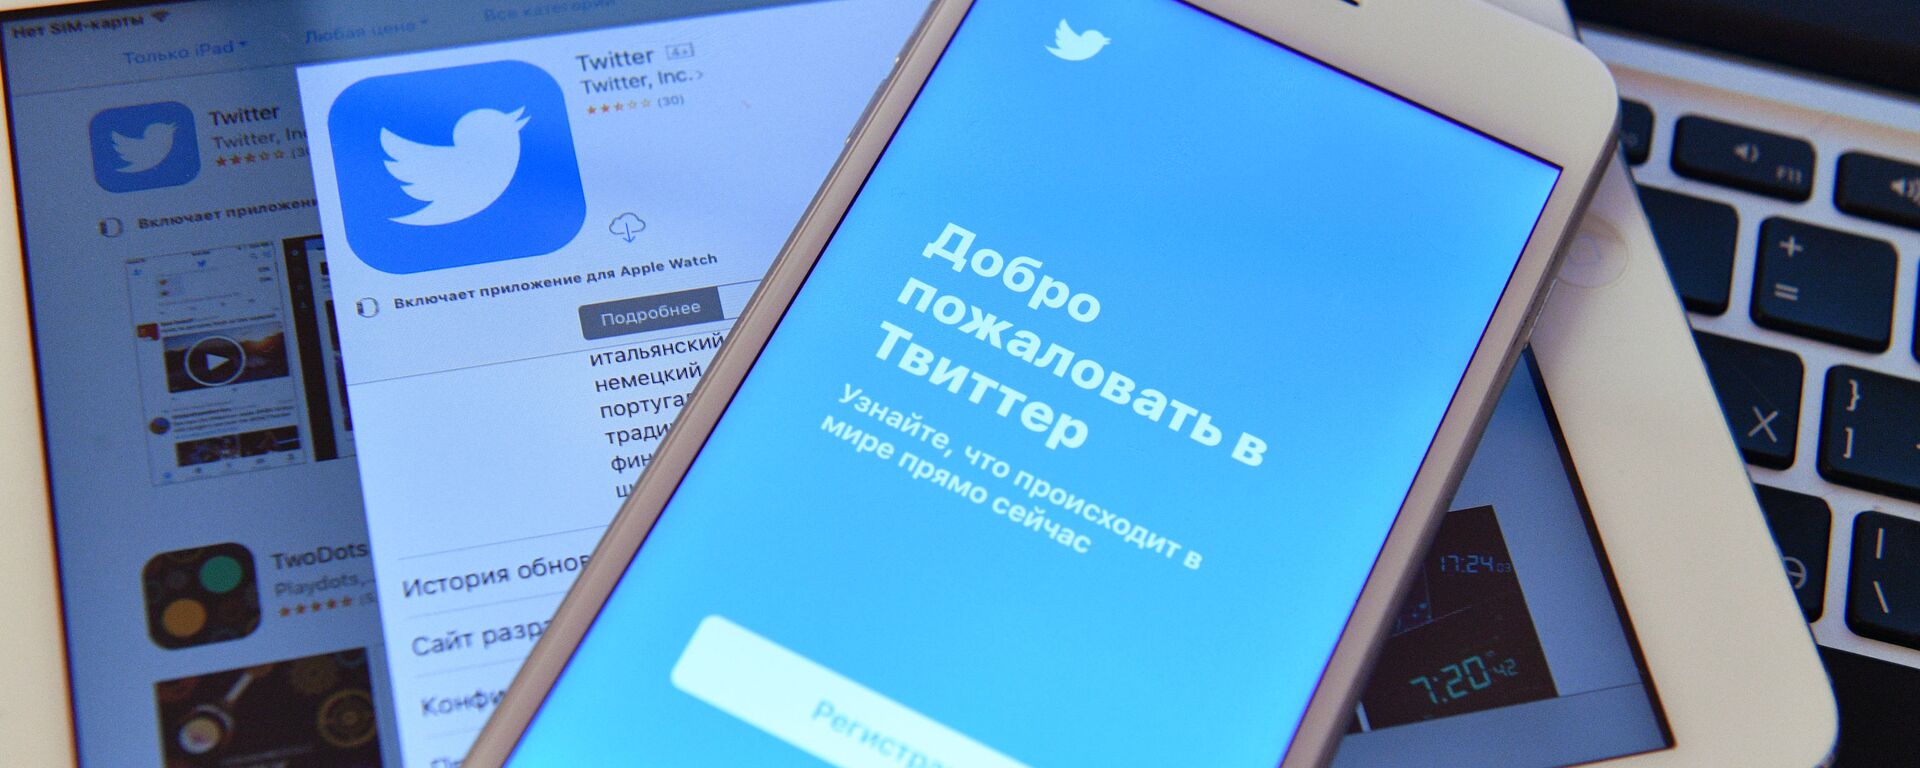 Страница социальной сети Twitter на экранах смартфона и планшета - Sputnik Узбекистан, 1920, 15.01.2021